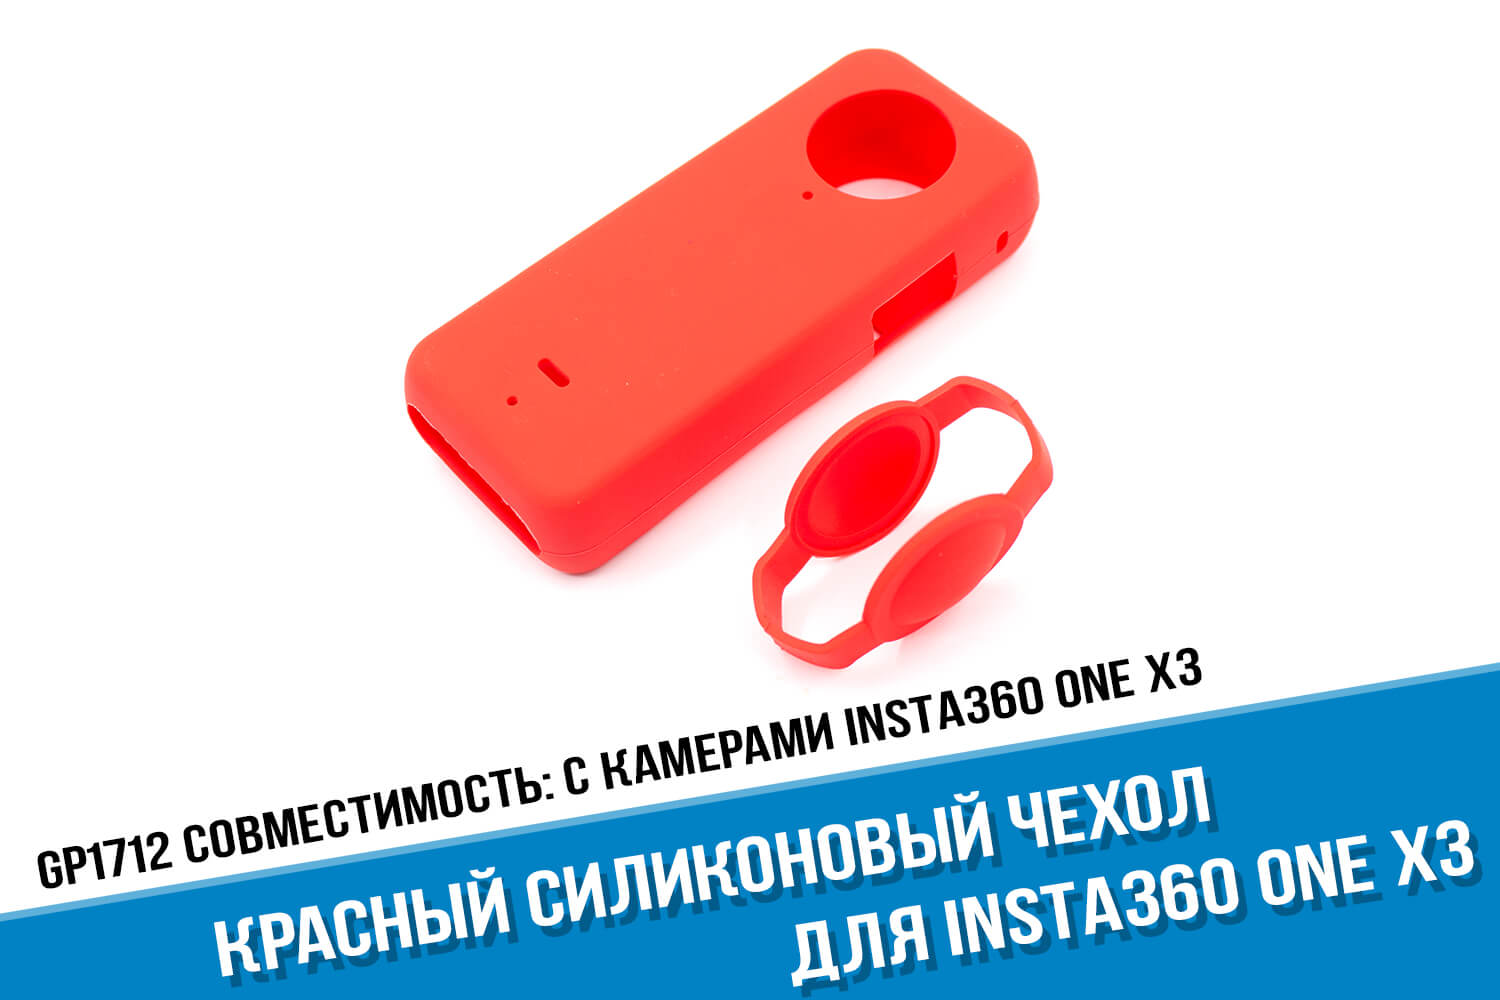 Красный чехол с крышками для экшн-камеры Insta360 One X3